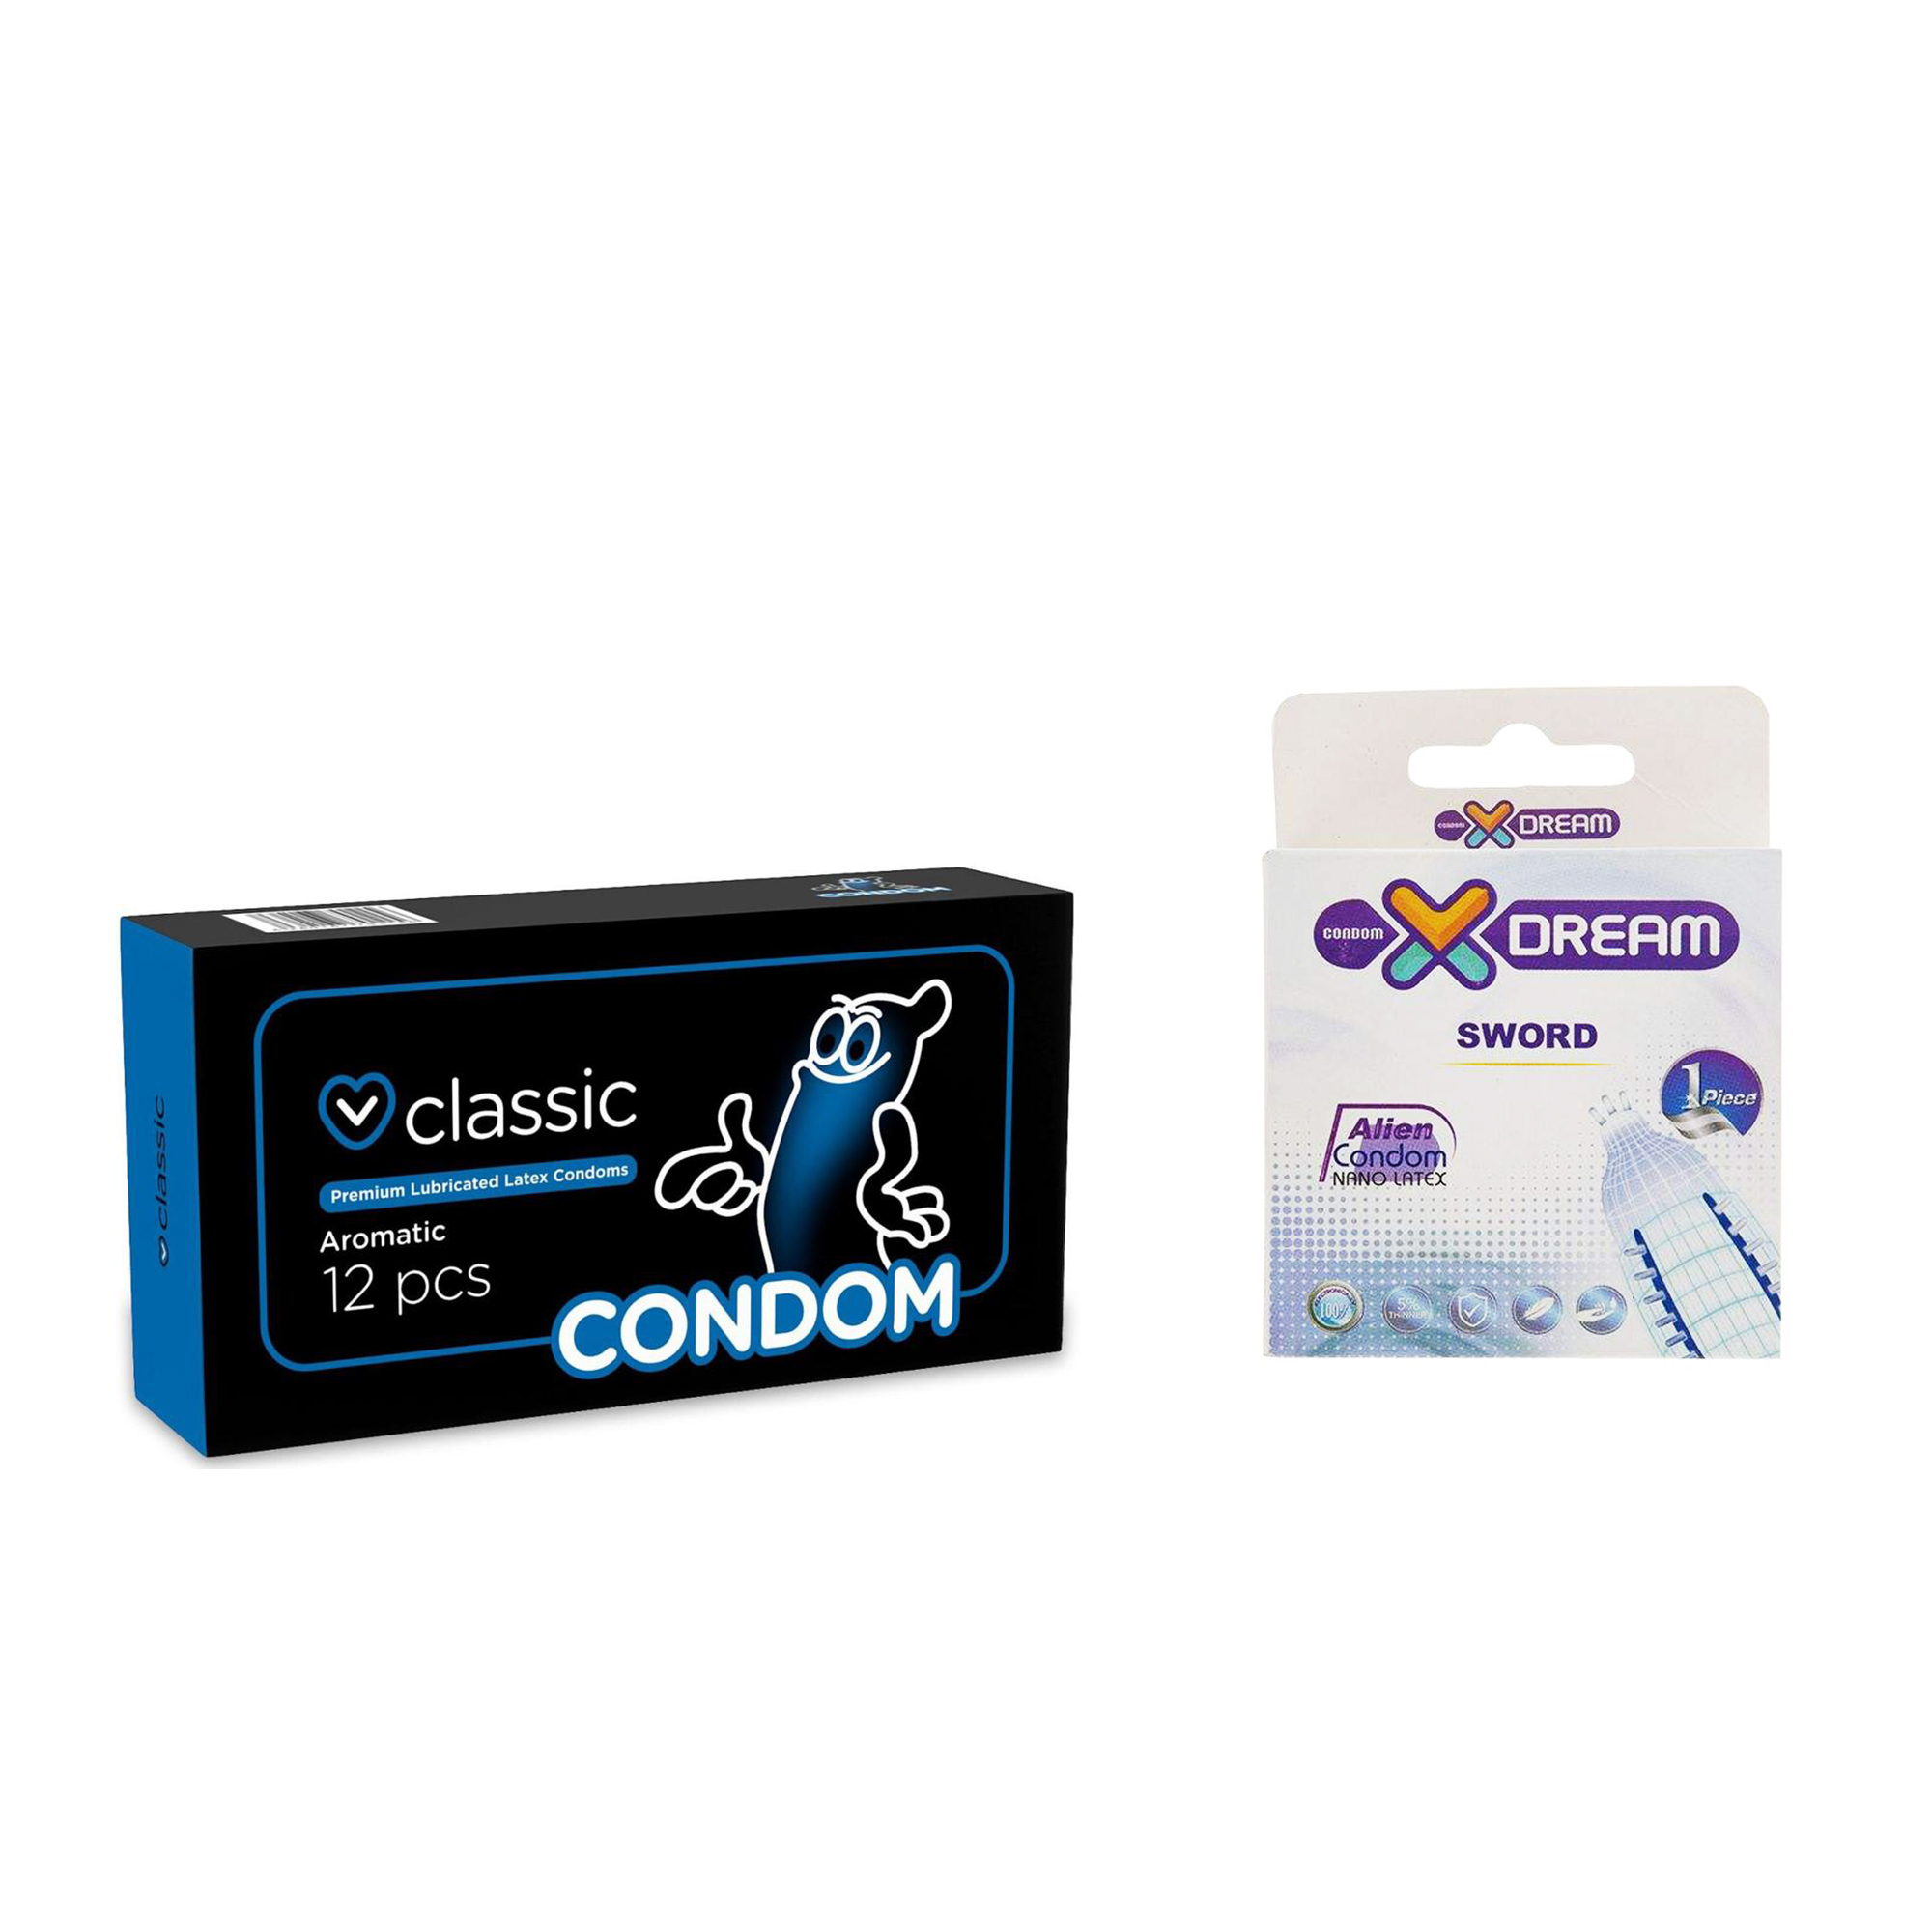 کاندوم ایکس دریم مدل Sword به همراه کاندوم کاندوم مدل Classic بسته 12 عددی